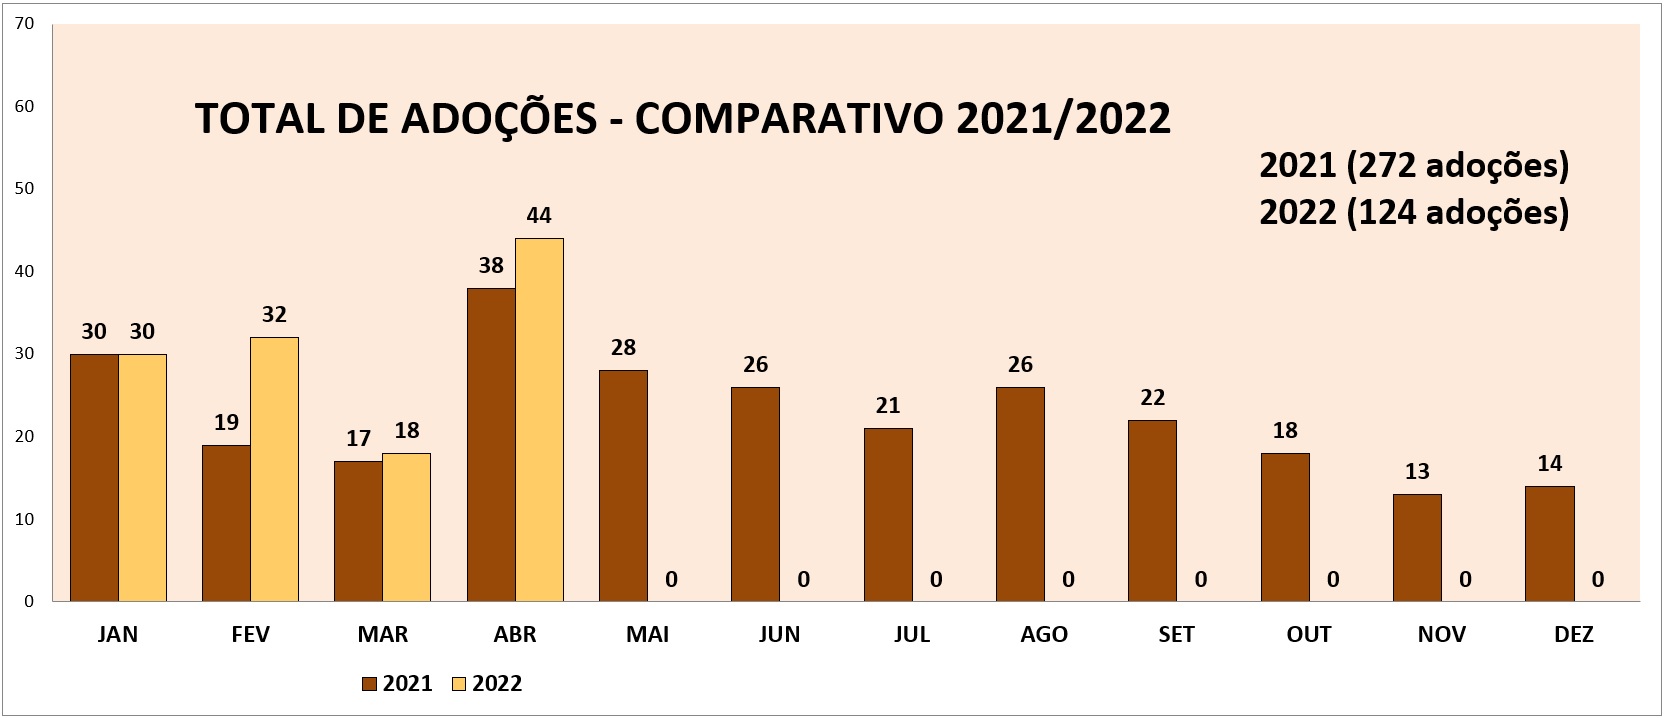 Imagem do gráfico comparativo de adoções 2021 e 2022. Em 2021 foram realizadas 272 adoções e em 2022 foram 124 adoções.